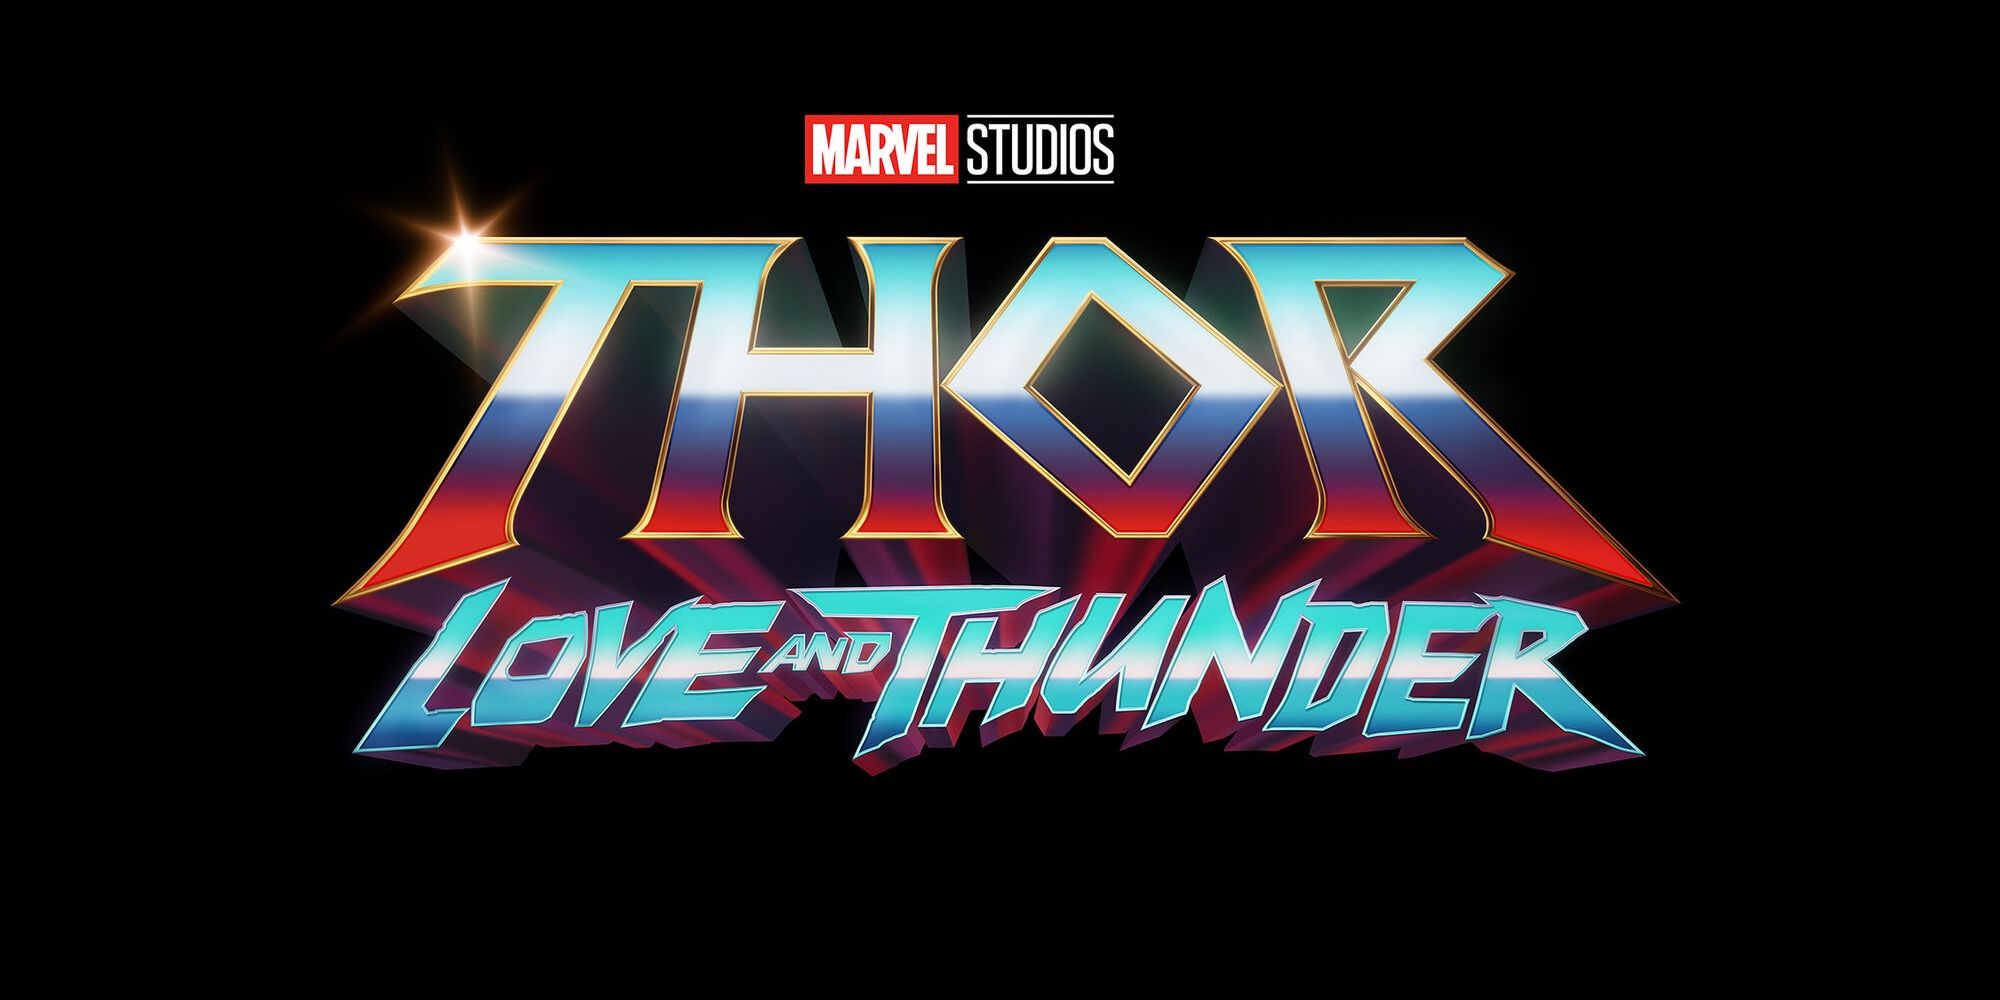 Thor: Miłość i grzmot – co wiemy do tej pory